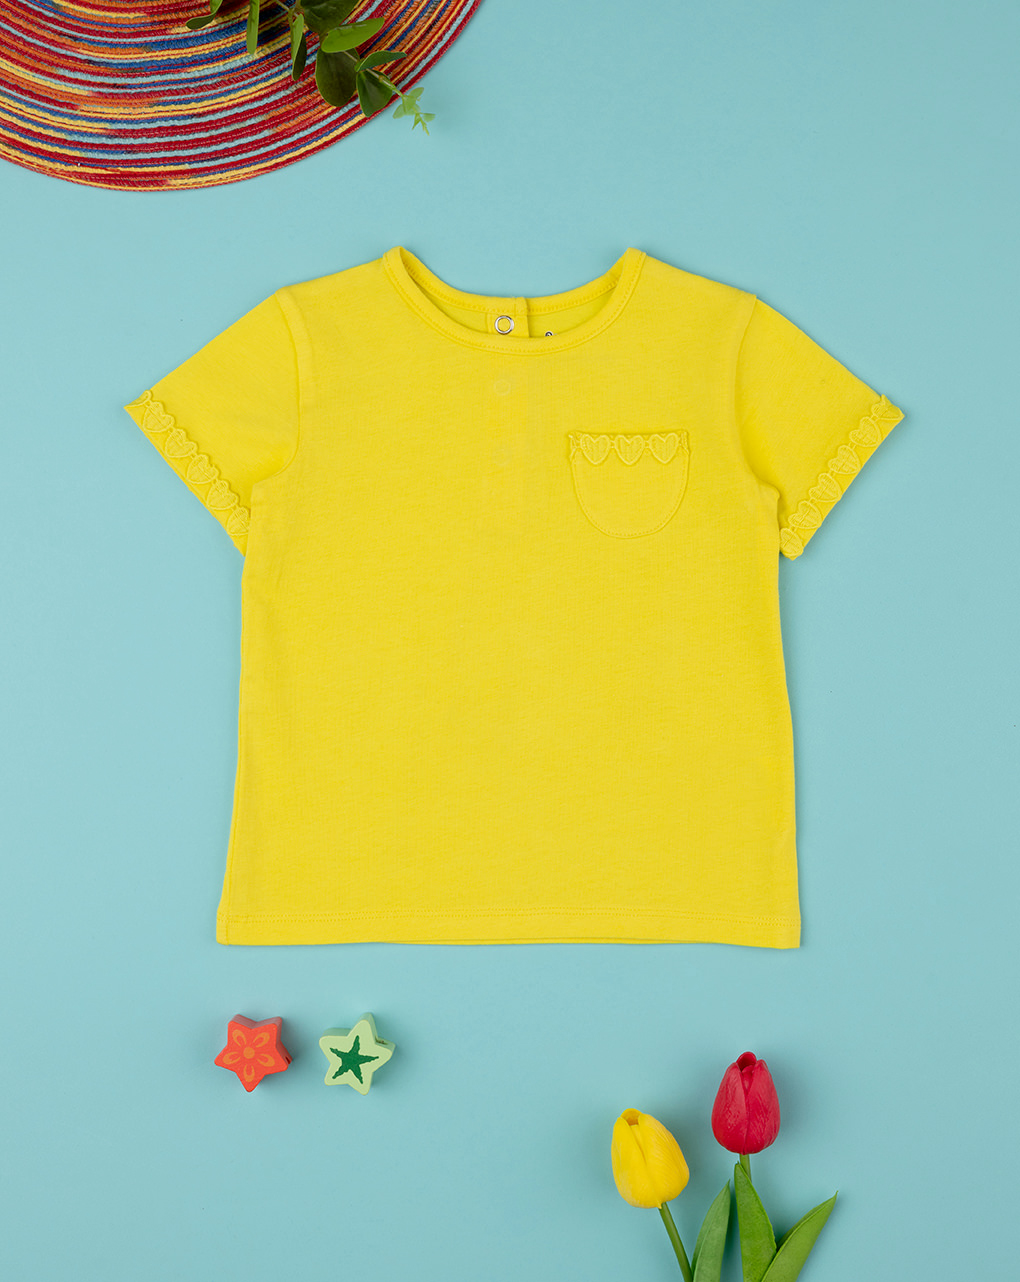 Niño pequeño de 3 años con una camiseta amarilla y pantalón corto